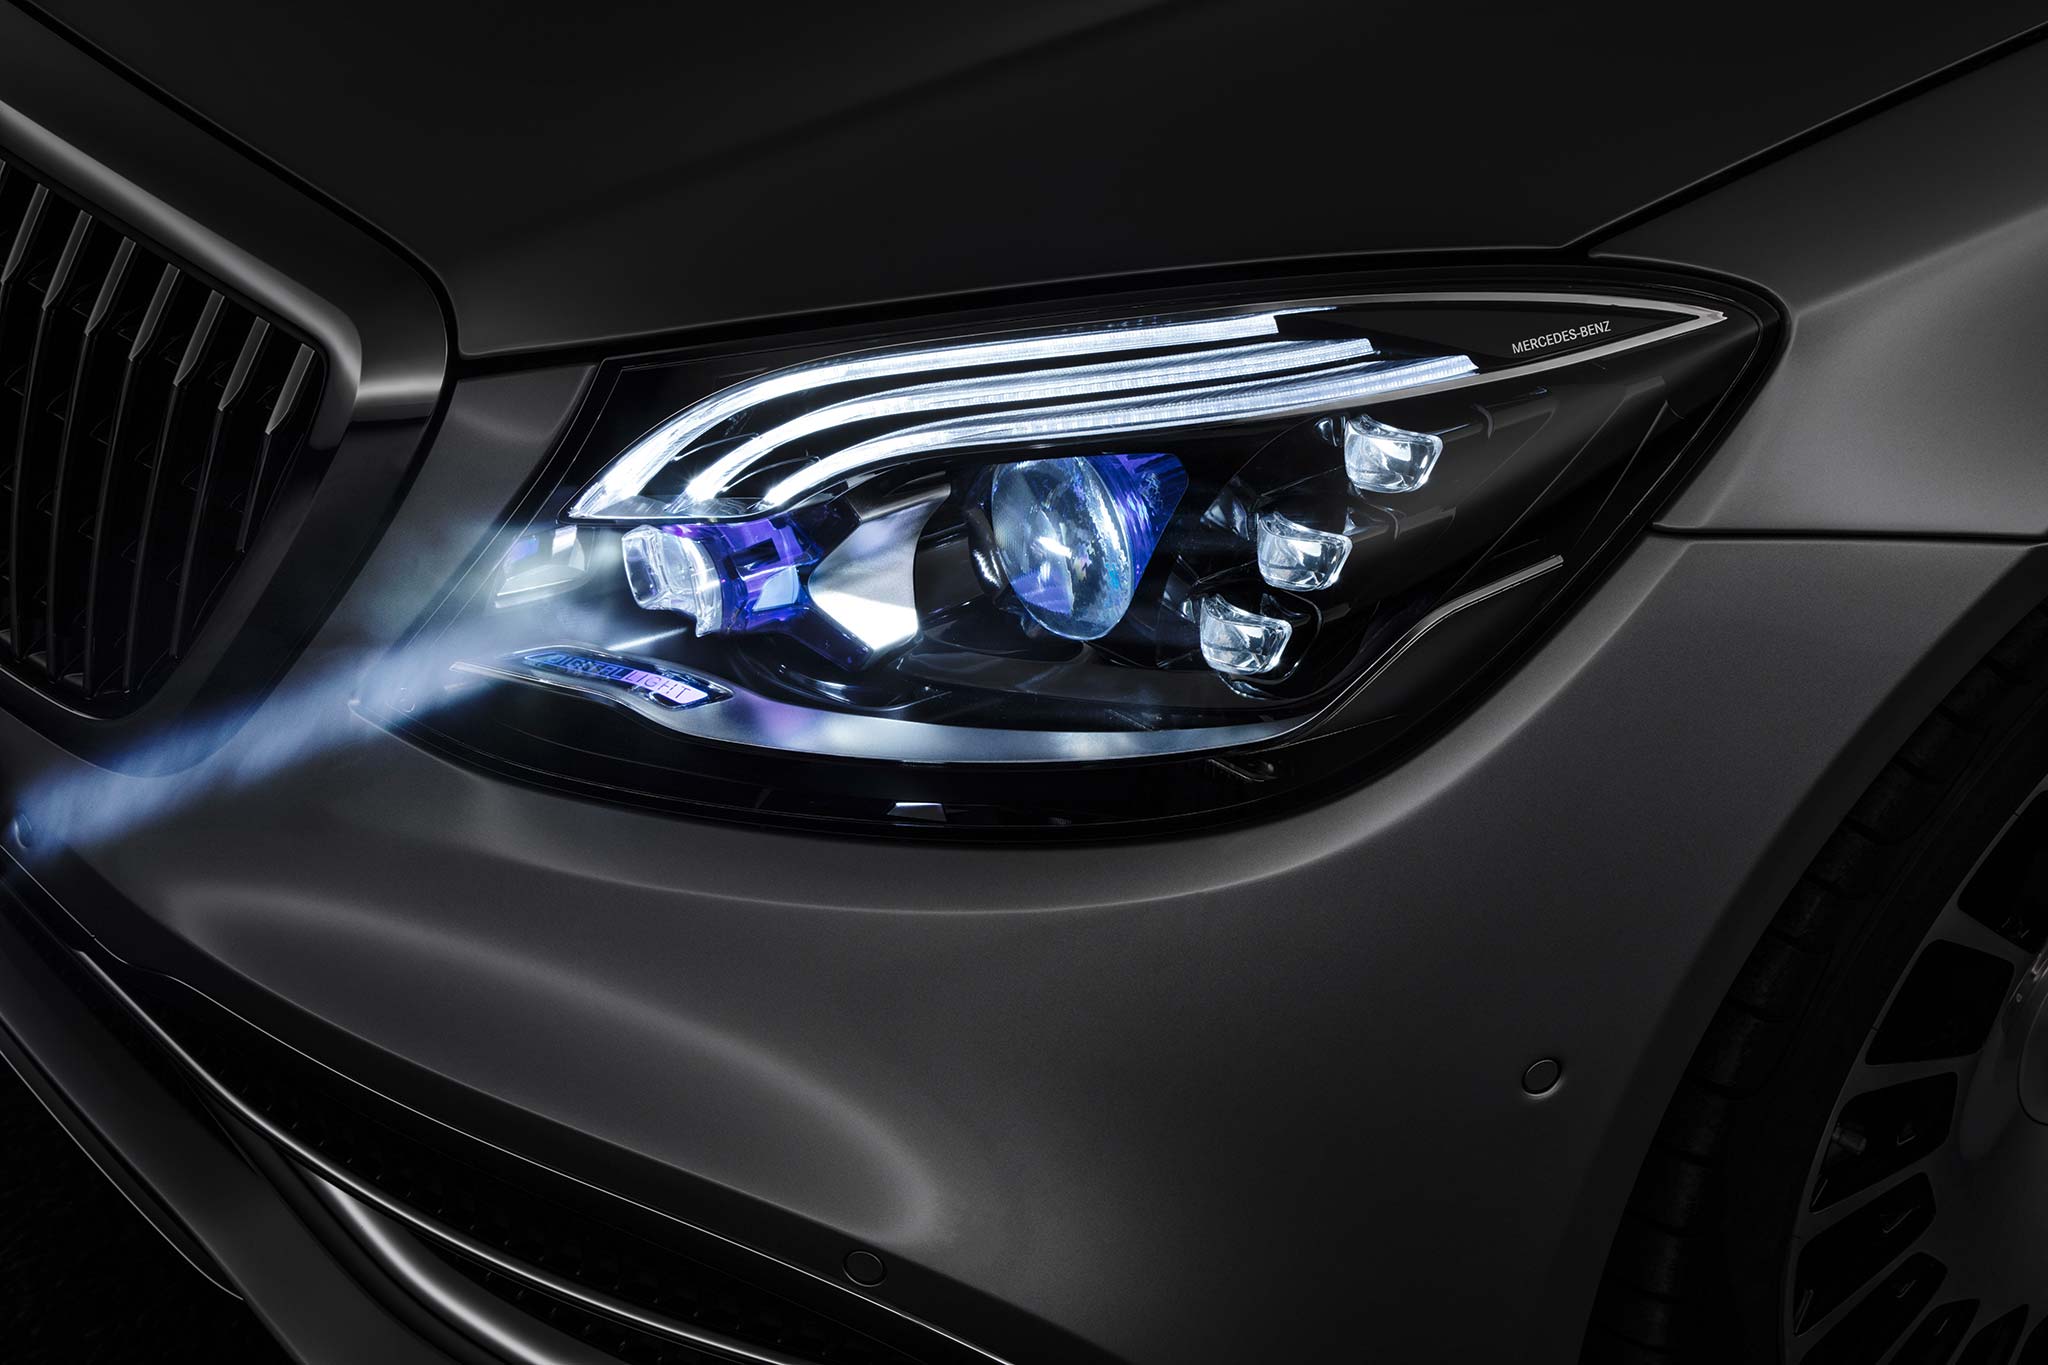 Mercedes-Benz_Digital_Light_gms18_tinhte_5.jpg